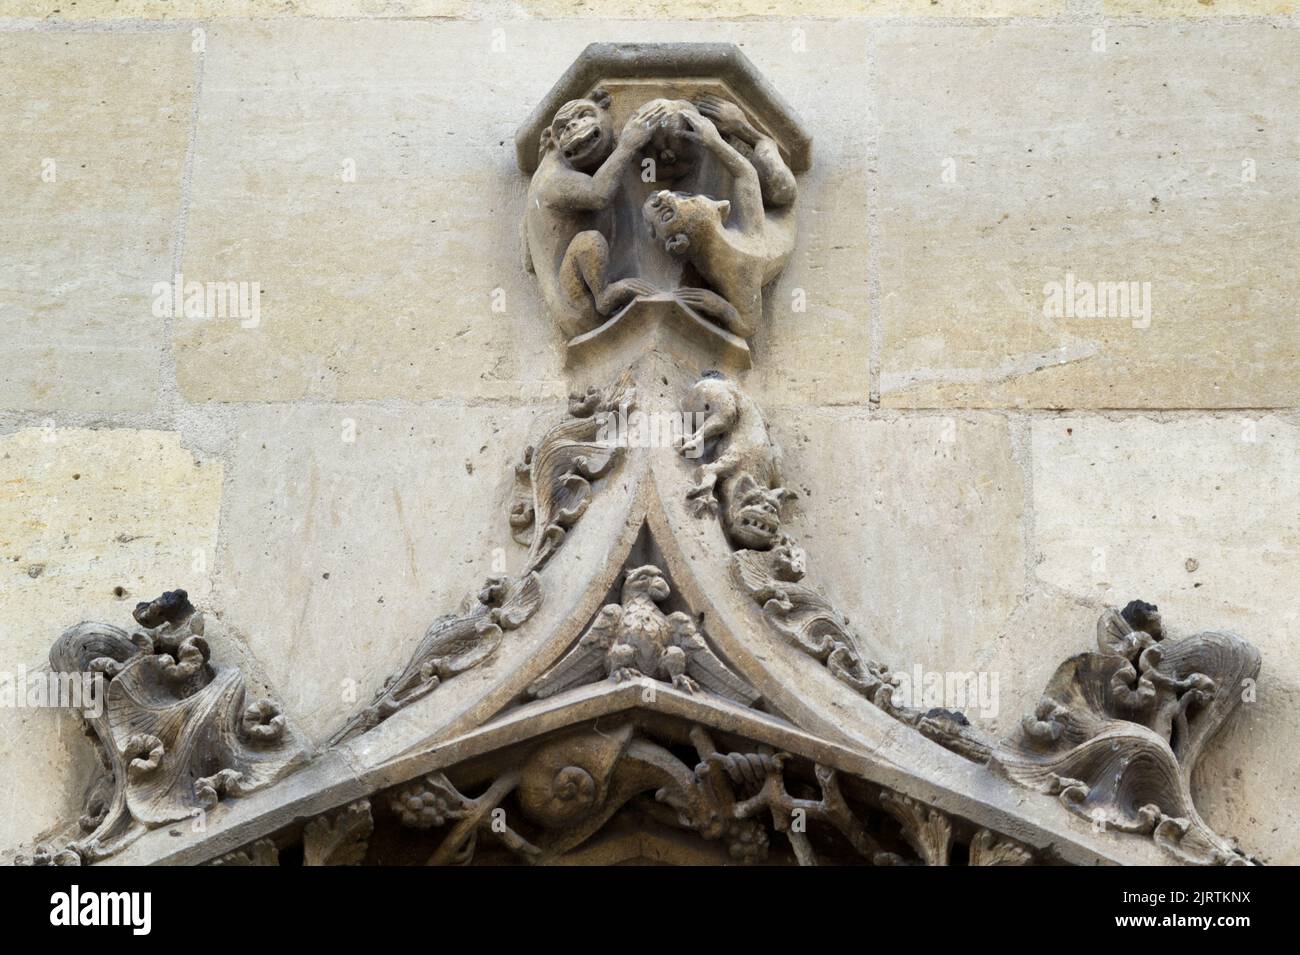 Monkeys - Porch of Saint-Germain l’Auxerrois, Place du Louvre, Paris Stock Photo